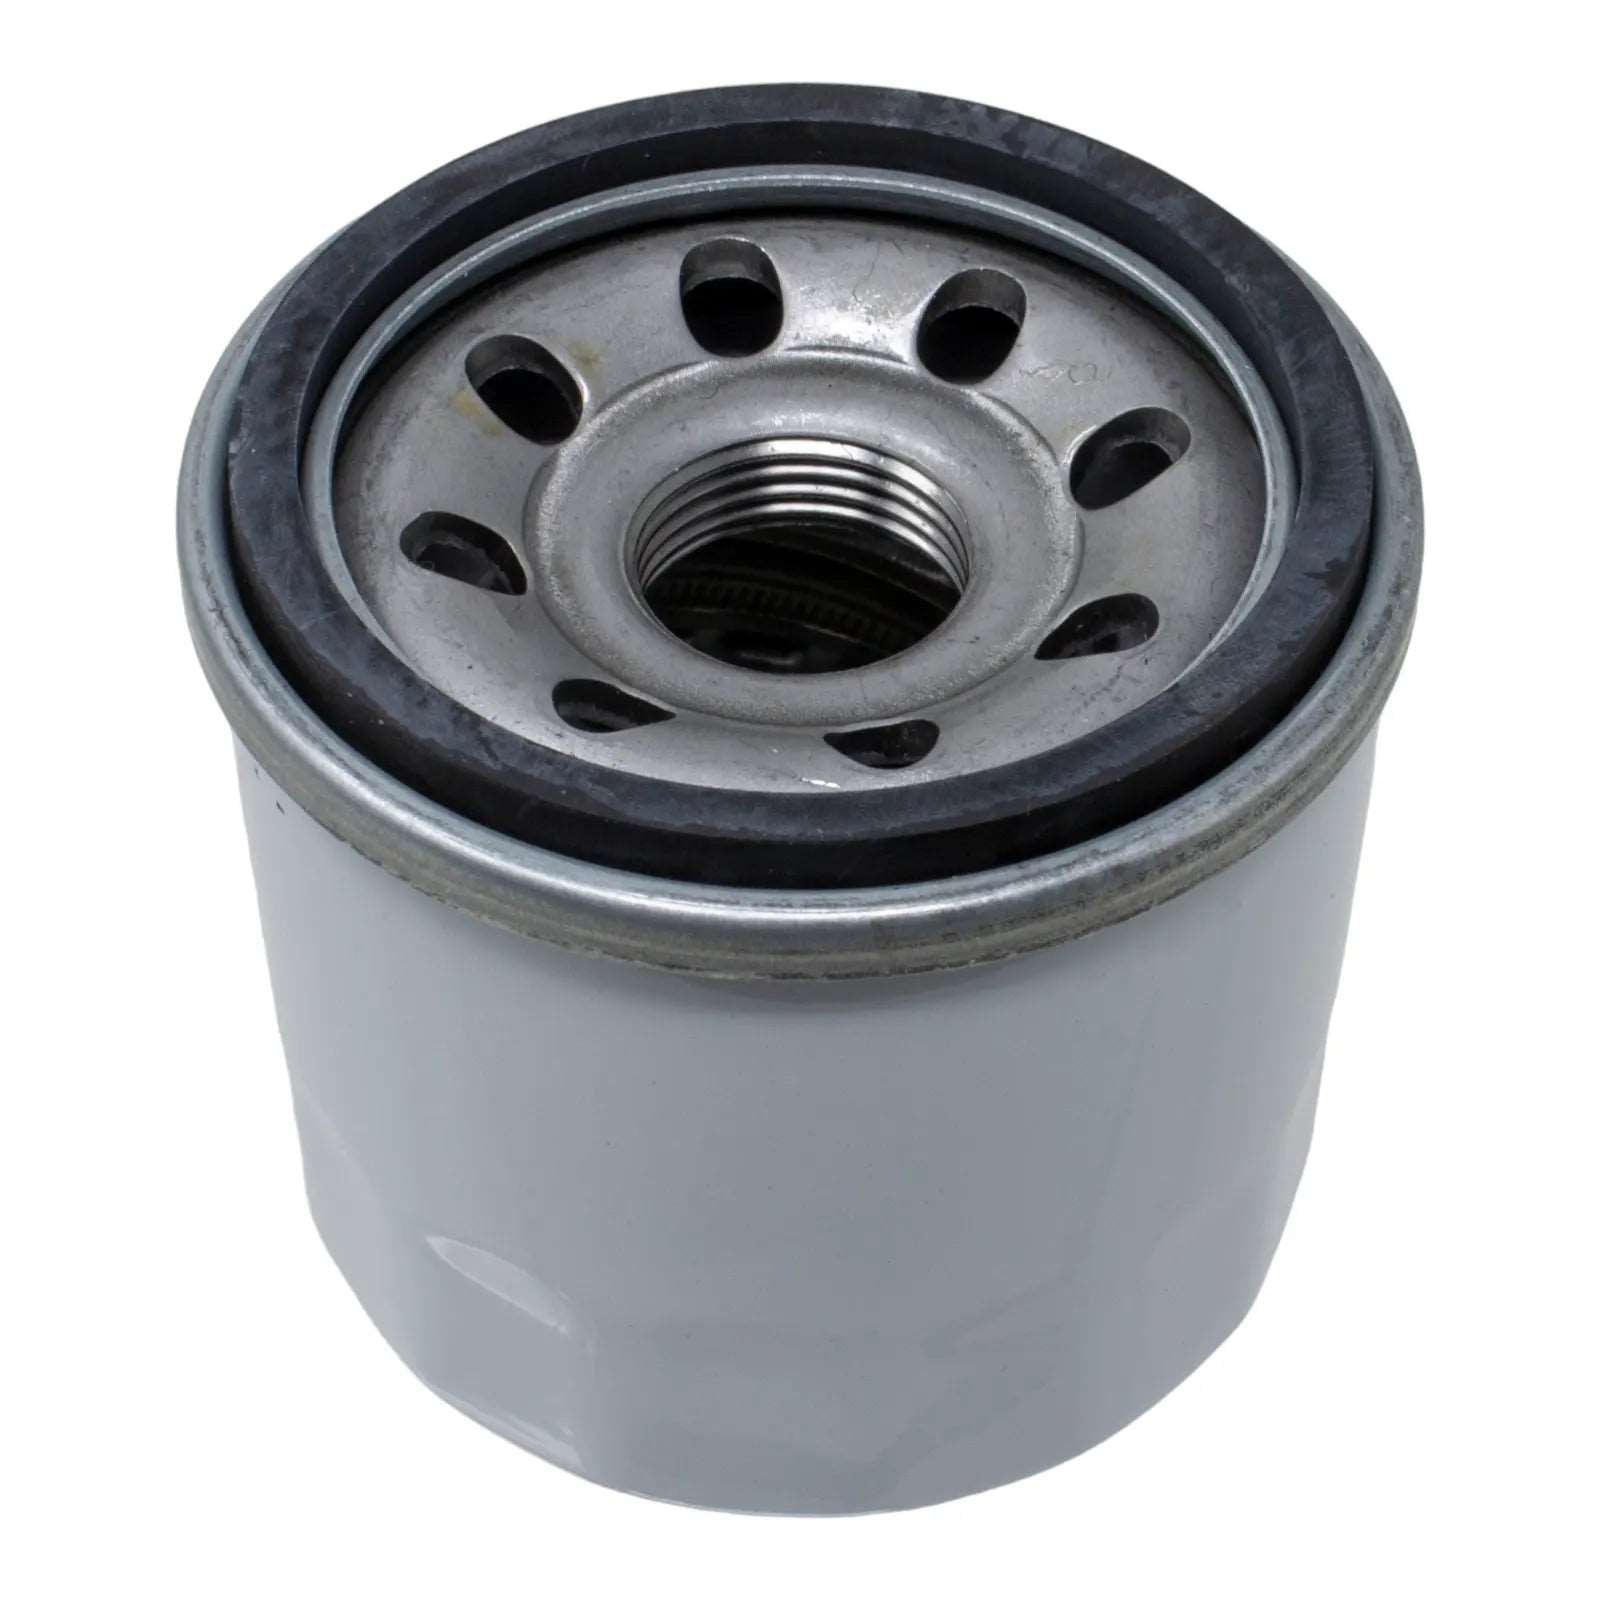 Duraforce 15853-32430, Engine Oil Filter For Kubota